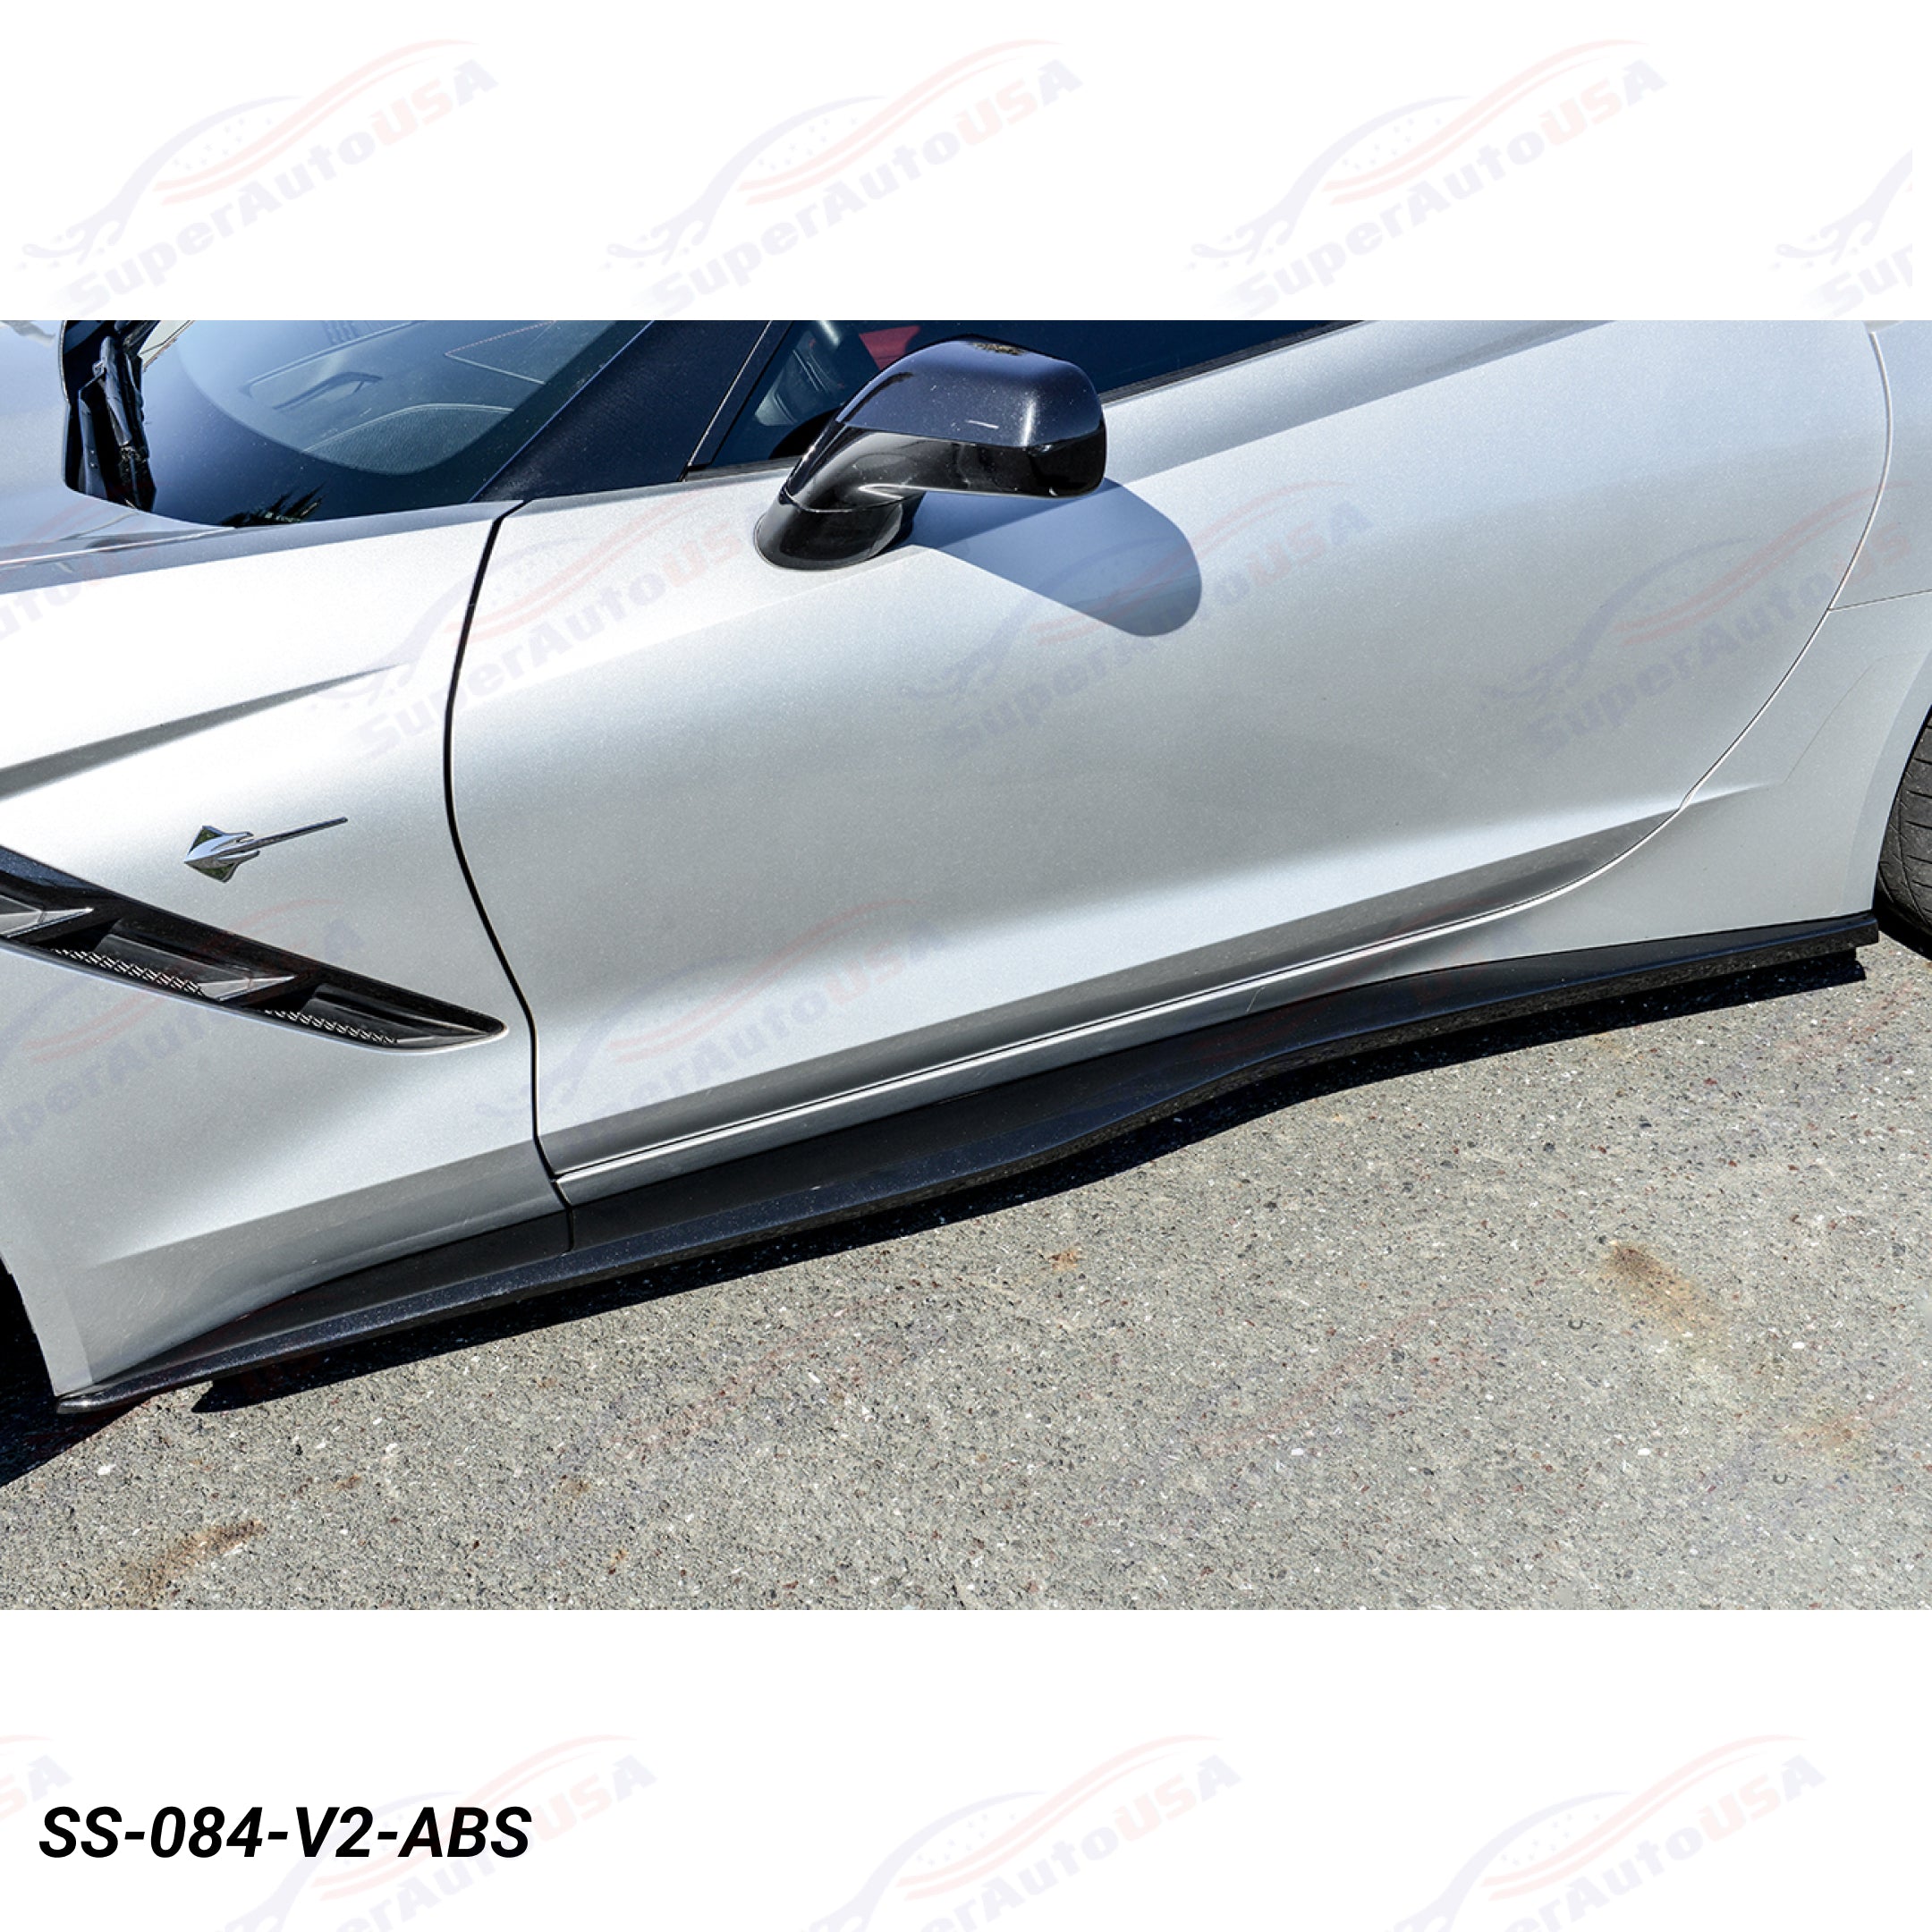 Fits Corvette C7 Stage 3.5 Front Lip Side Skirts Rear Spoiler Full Body Set